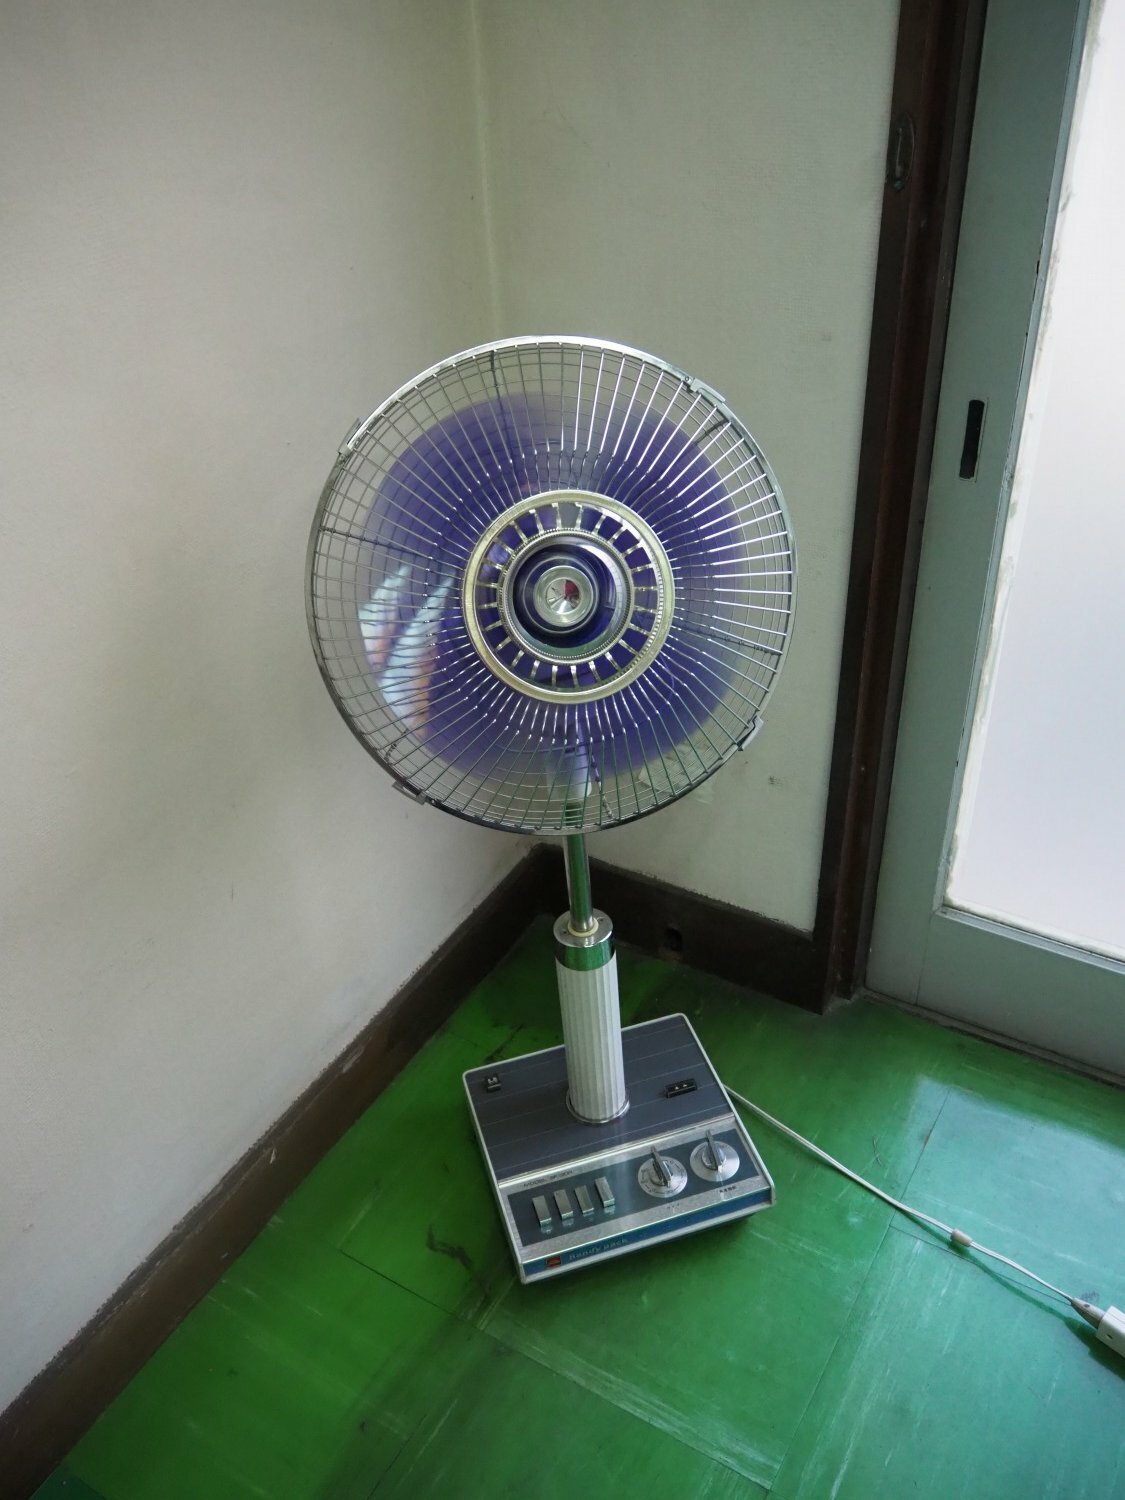 取材時に伺わせていただいた応接室の扇風機が、ガチャコンと回す昭和の扇風機が現役でした。これ欲しい・・・